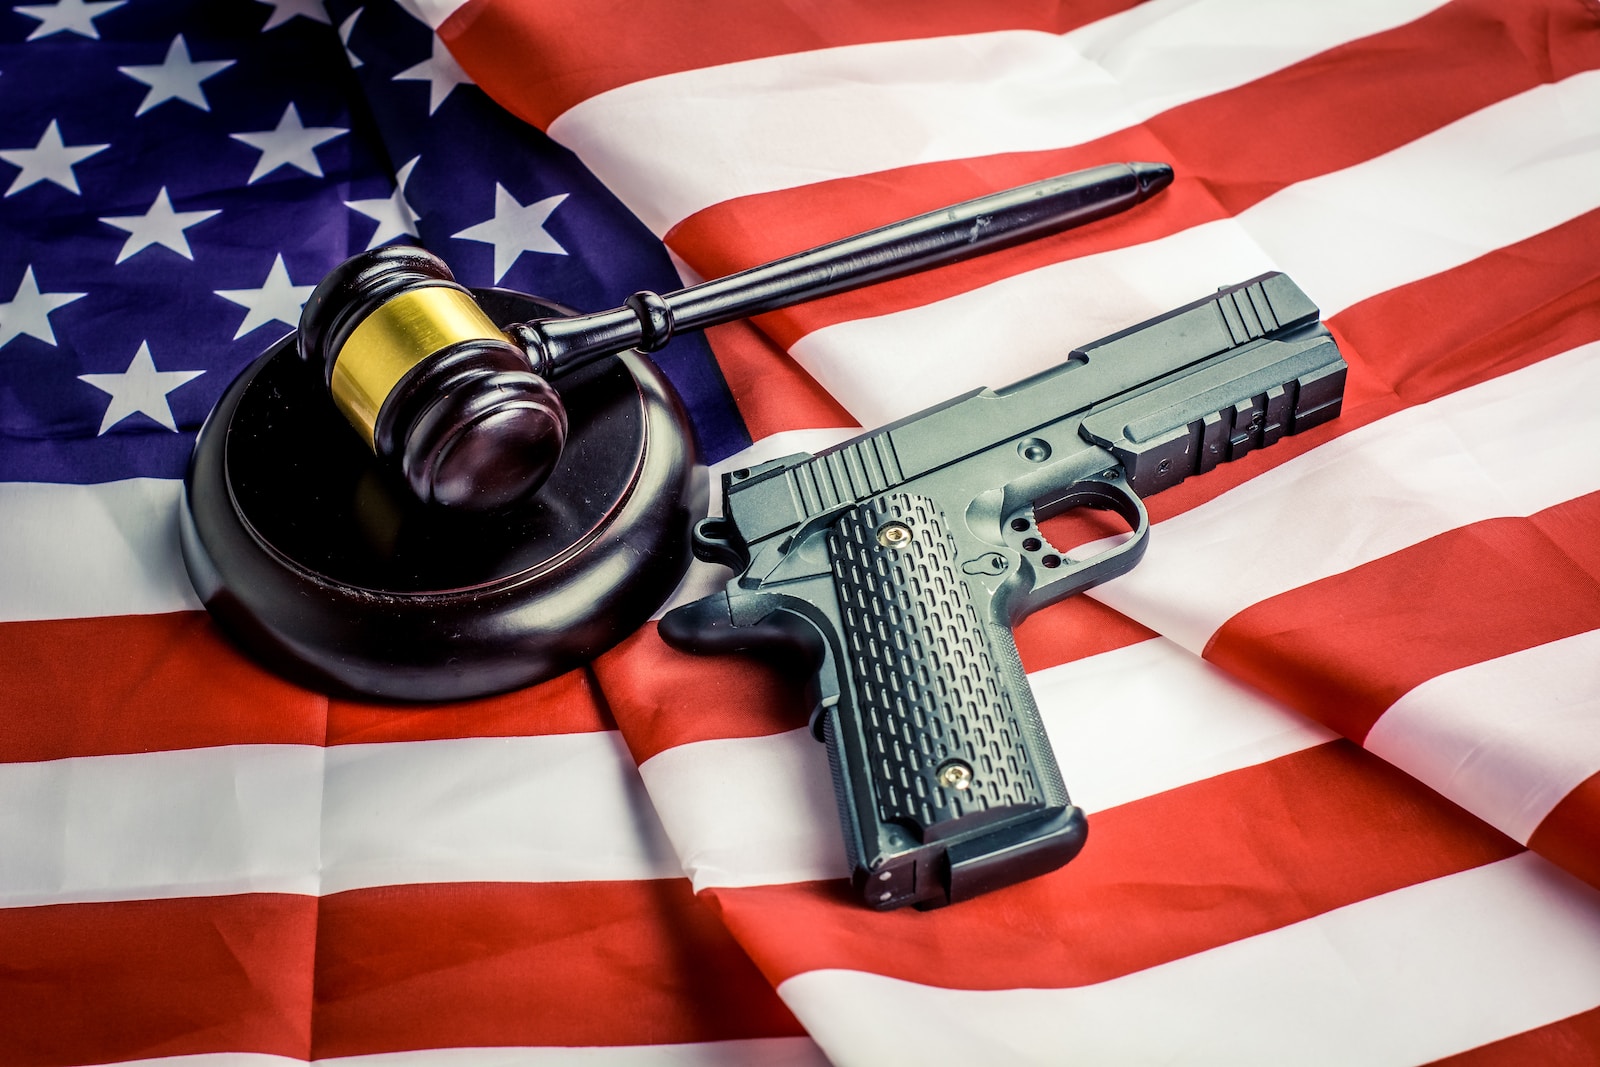 a gun, a judge's hammer, and an american flag